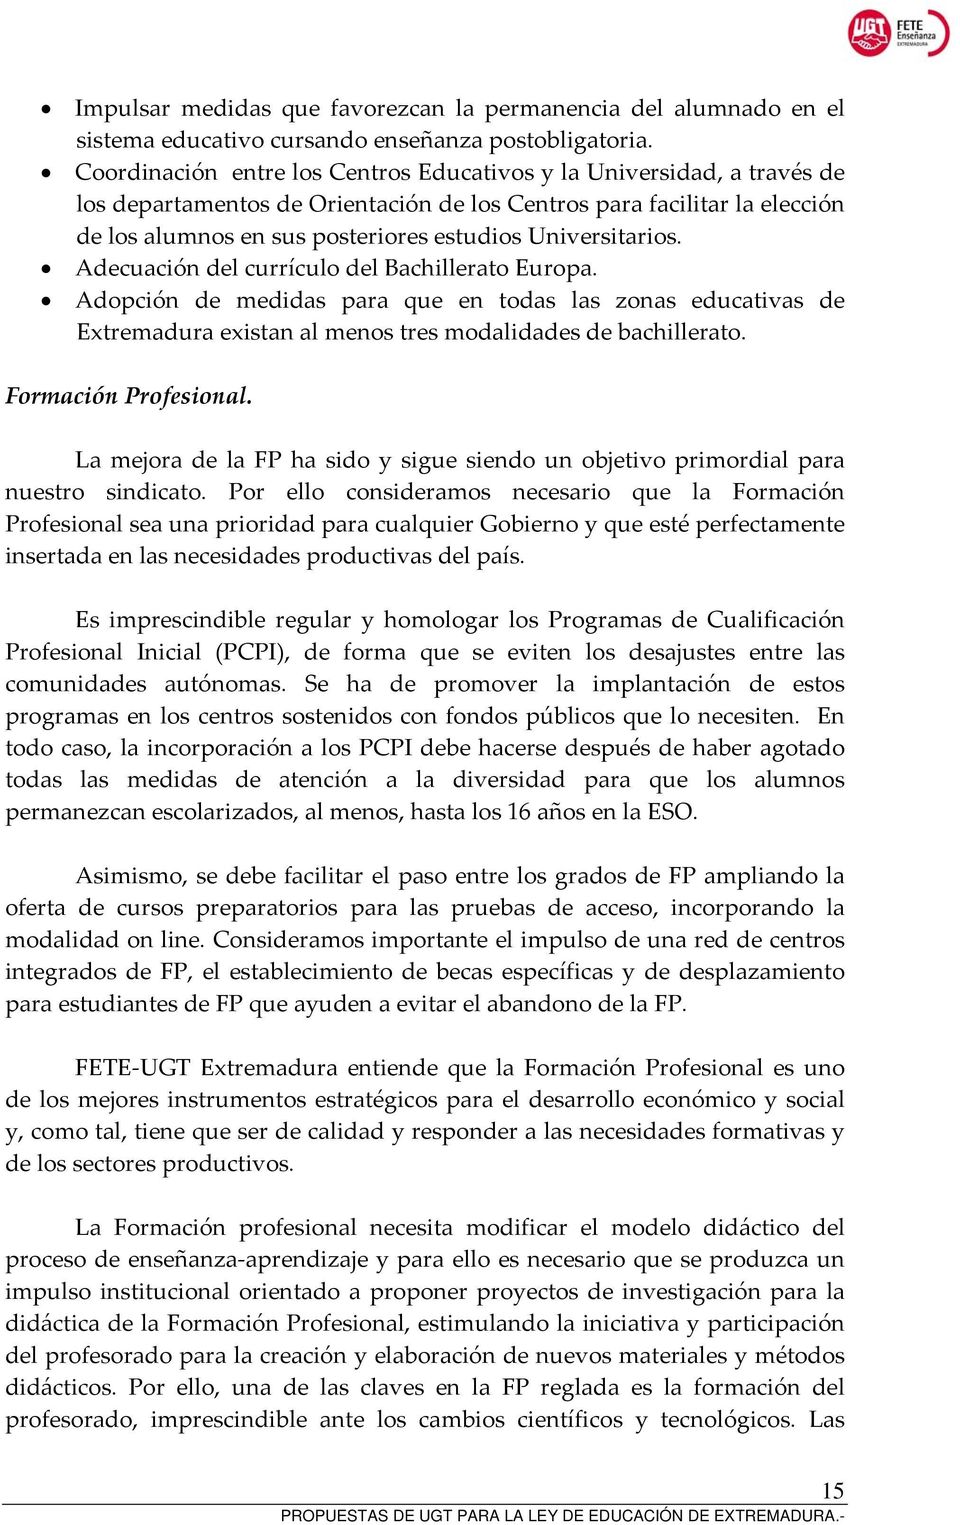 Universitarios. Adecuación del currículo del Bachillerato Europa. Adopción de medidas para que en todas las zonas educativas de Extremadura existan al menos tres modalidades de bachillerato.